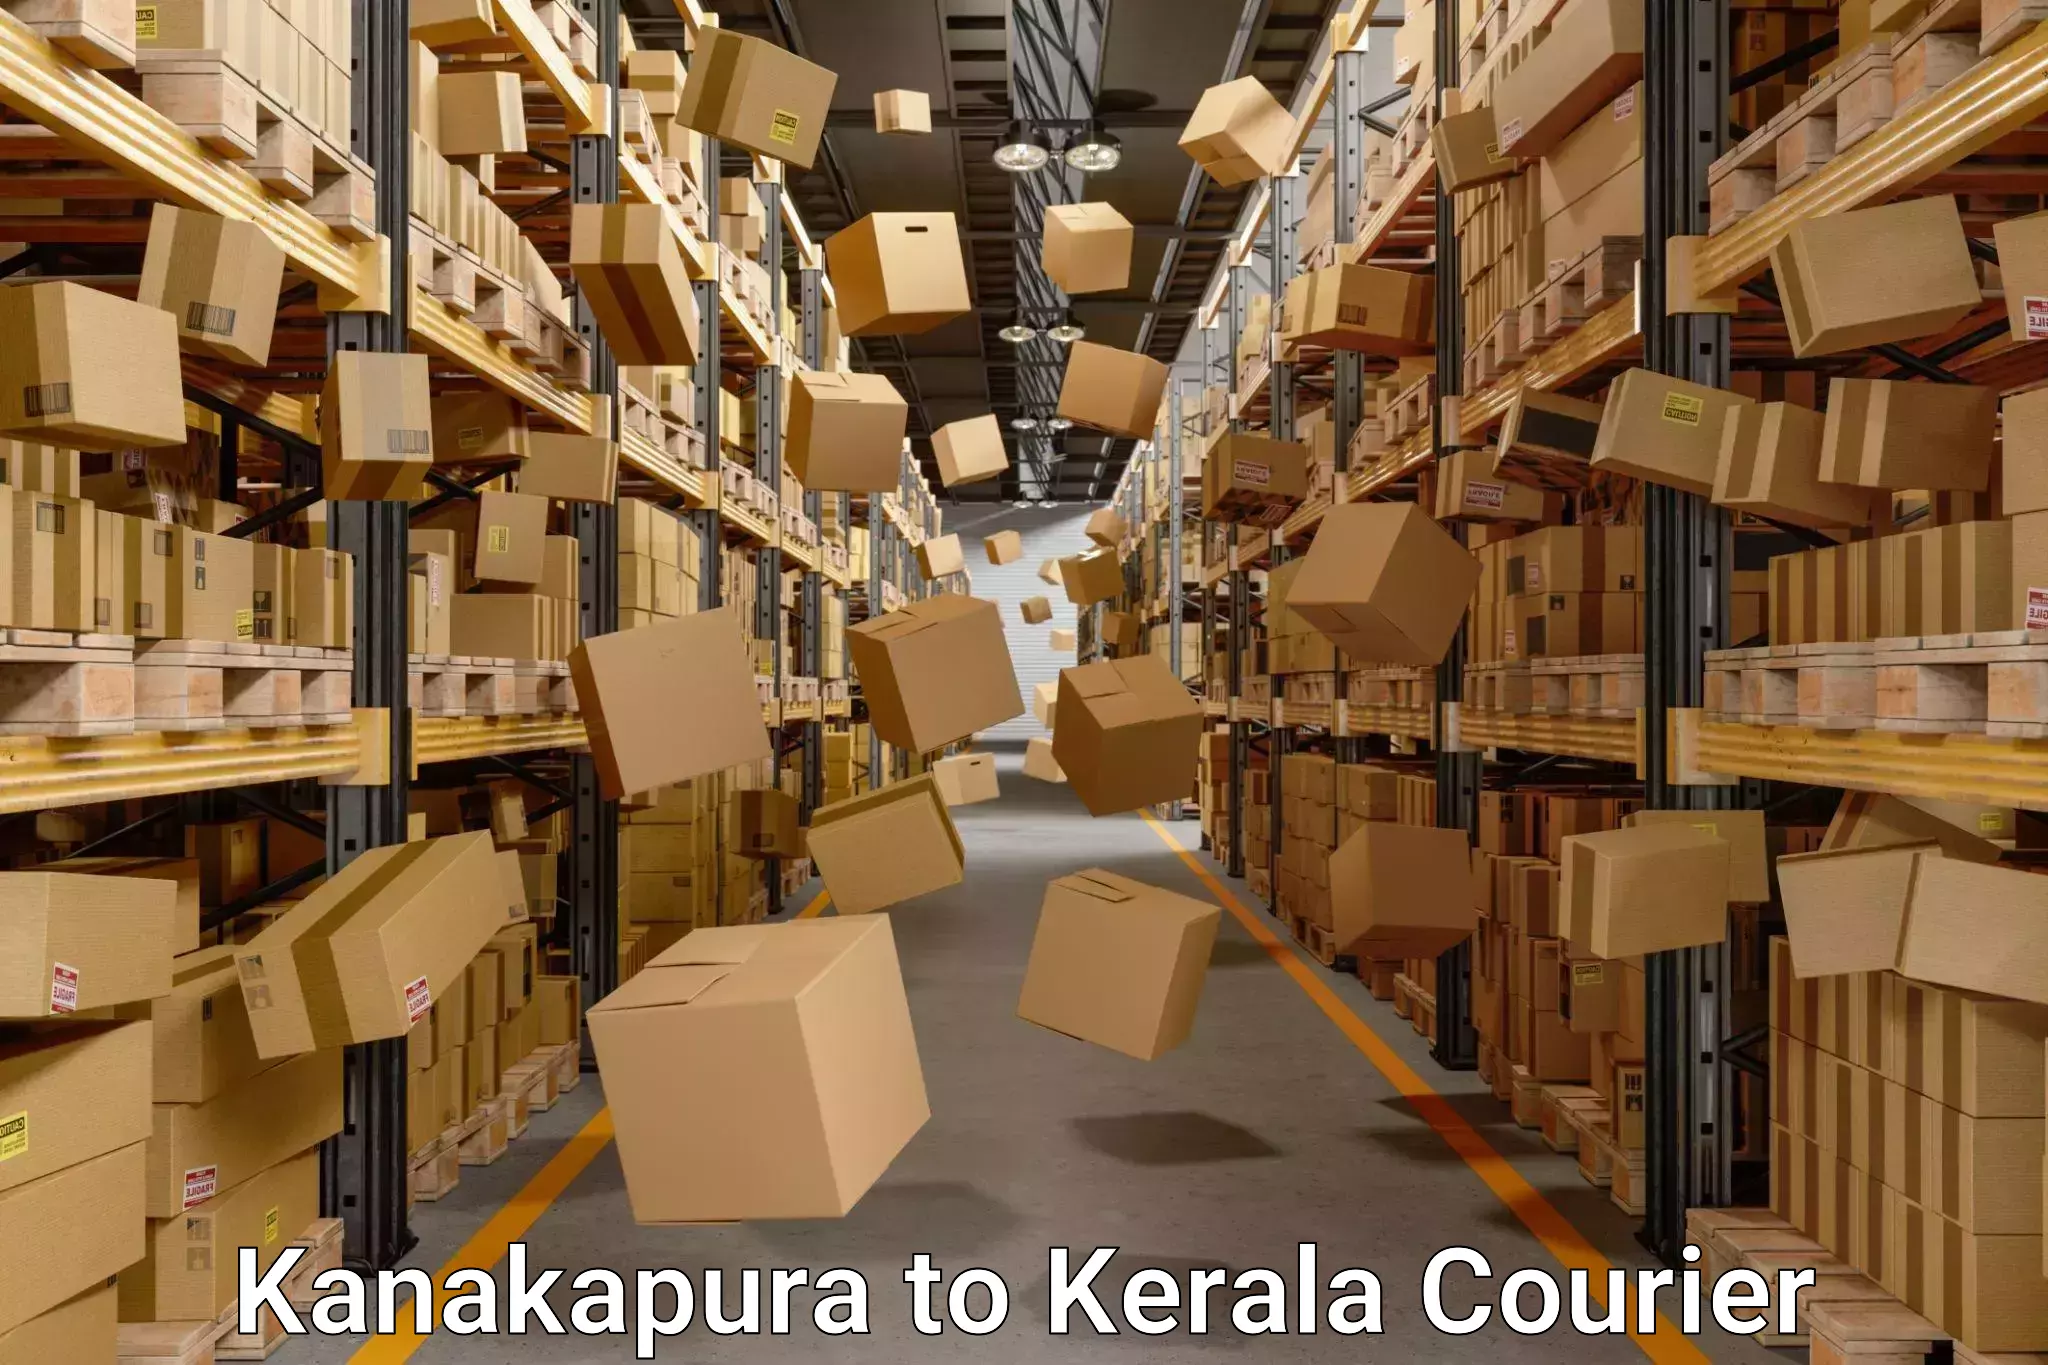 Professional moving company Kanakapura to Nallepilly